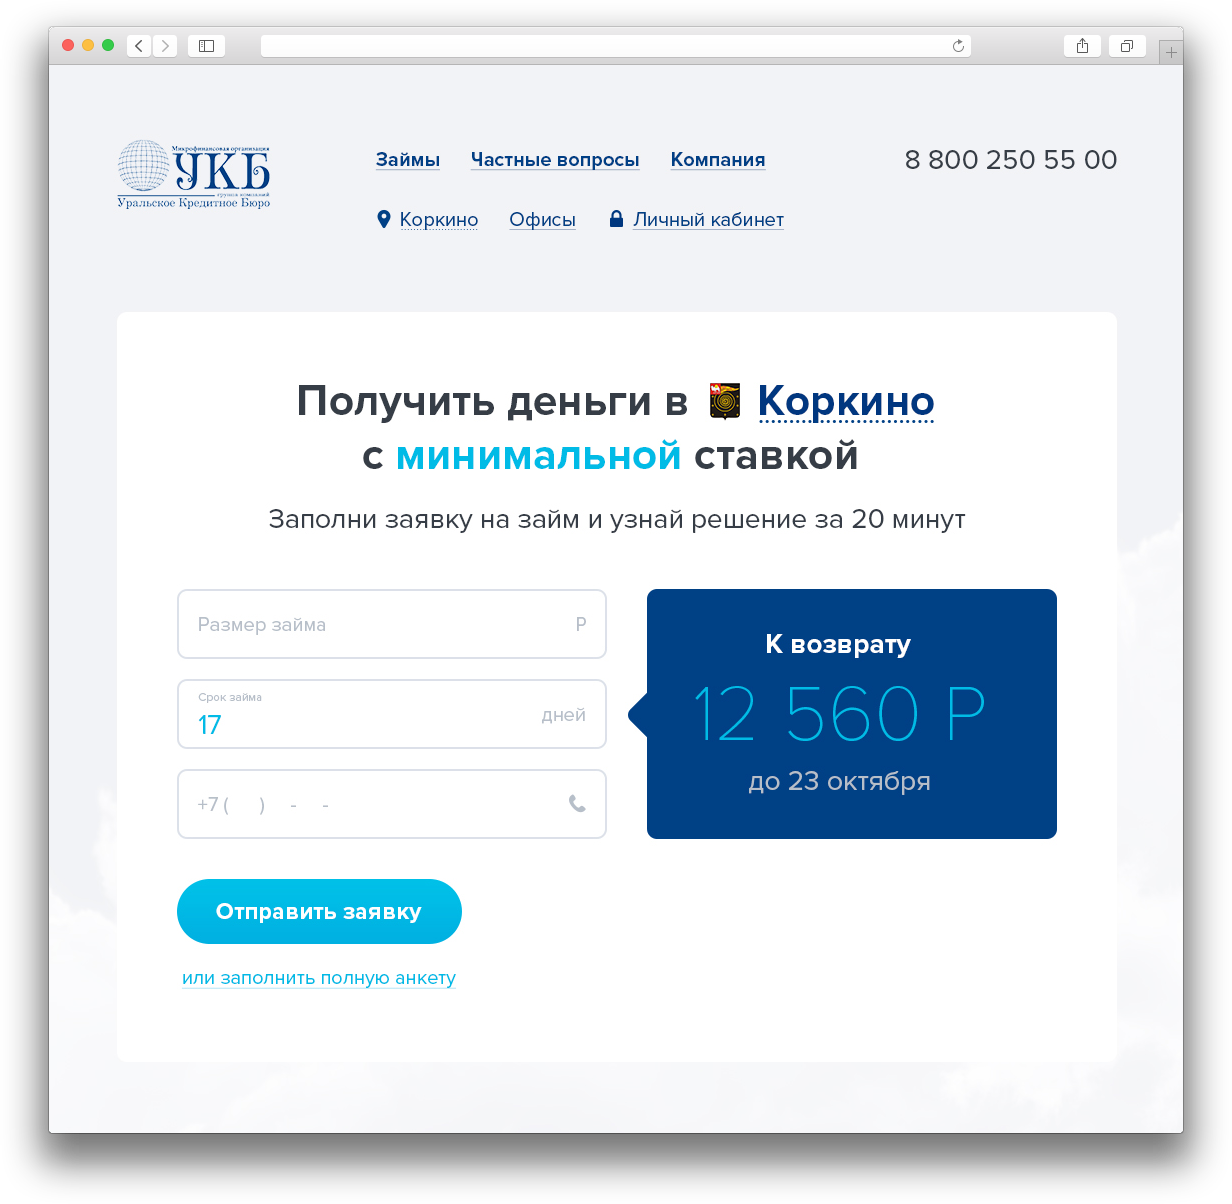 Сайт Уральского кредитного бюро